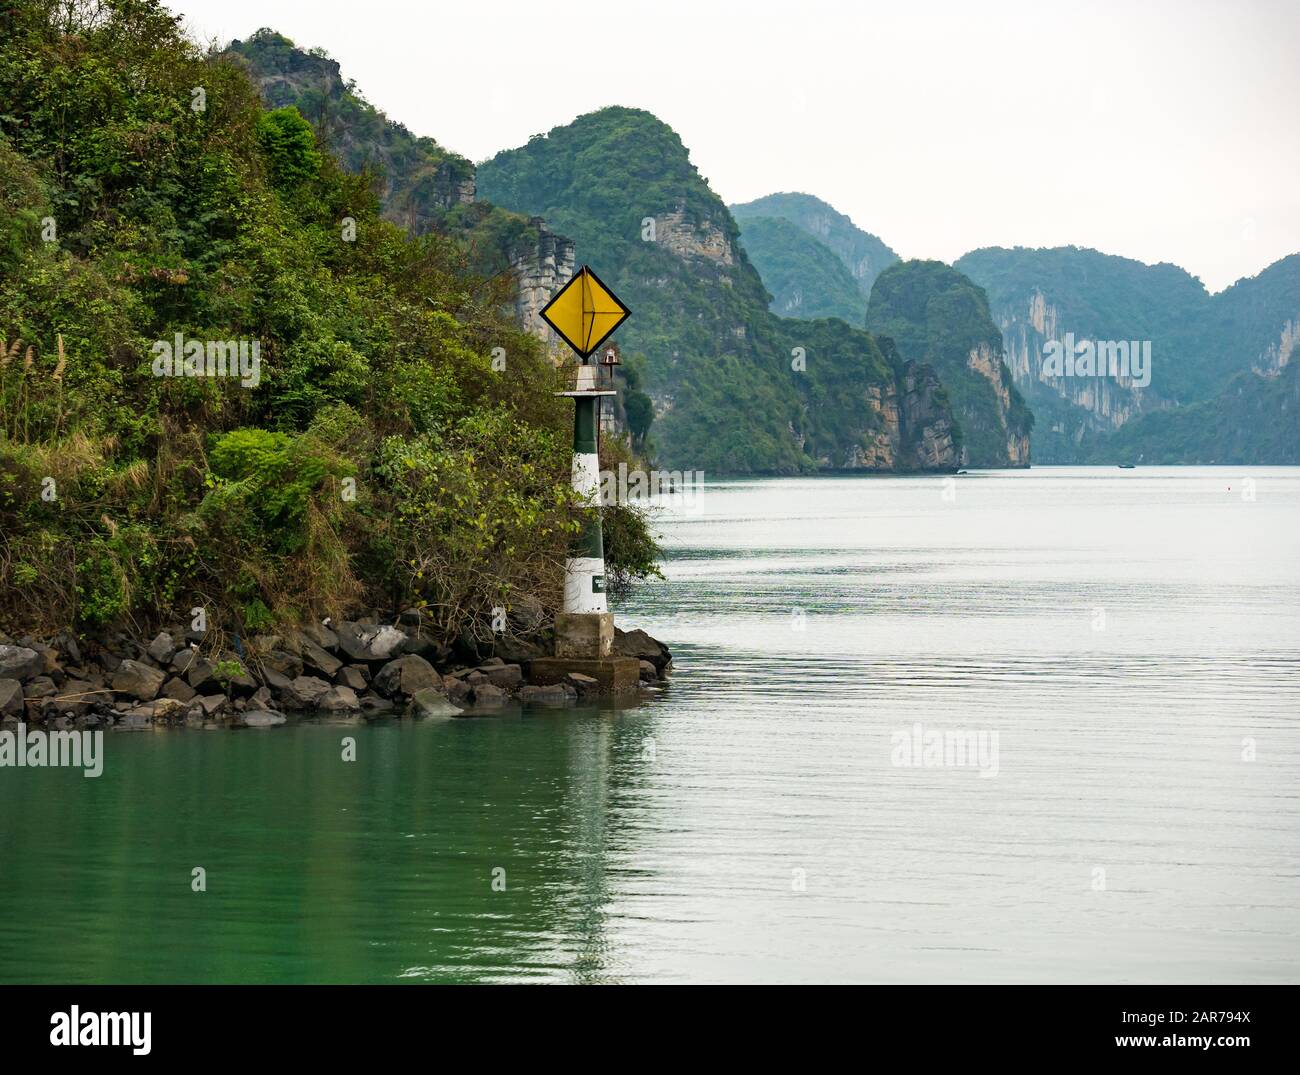 Marqueur de navigation sur la rive rocheuse avec falaises de karst calcaire, baie de Halong, Vietnam, Asie Banque D'Images